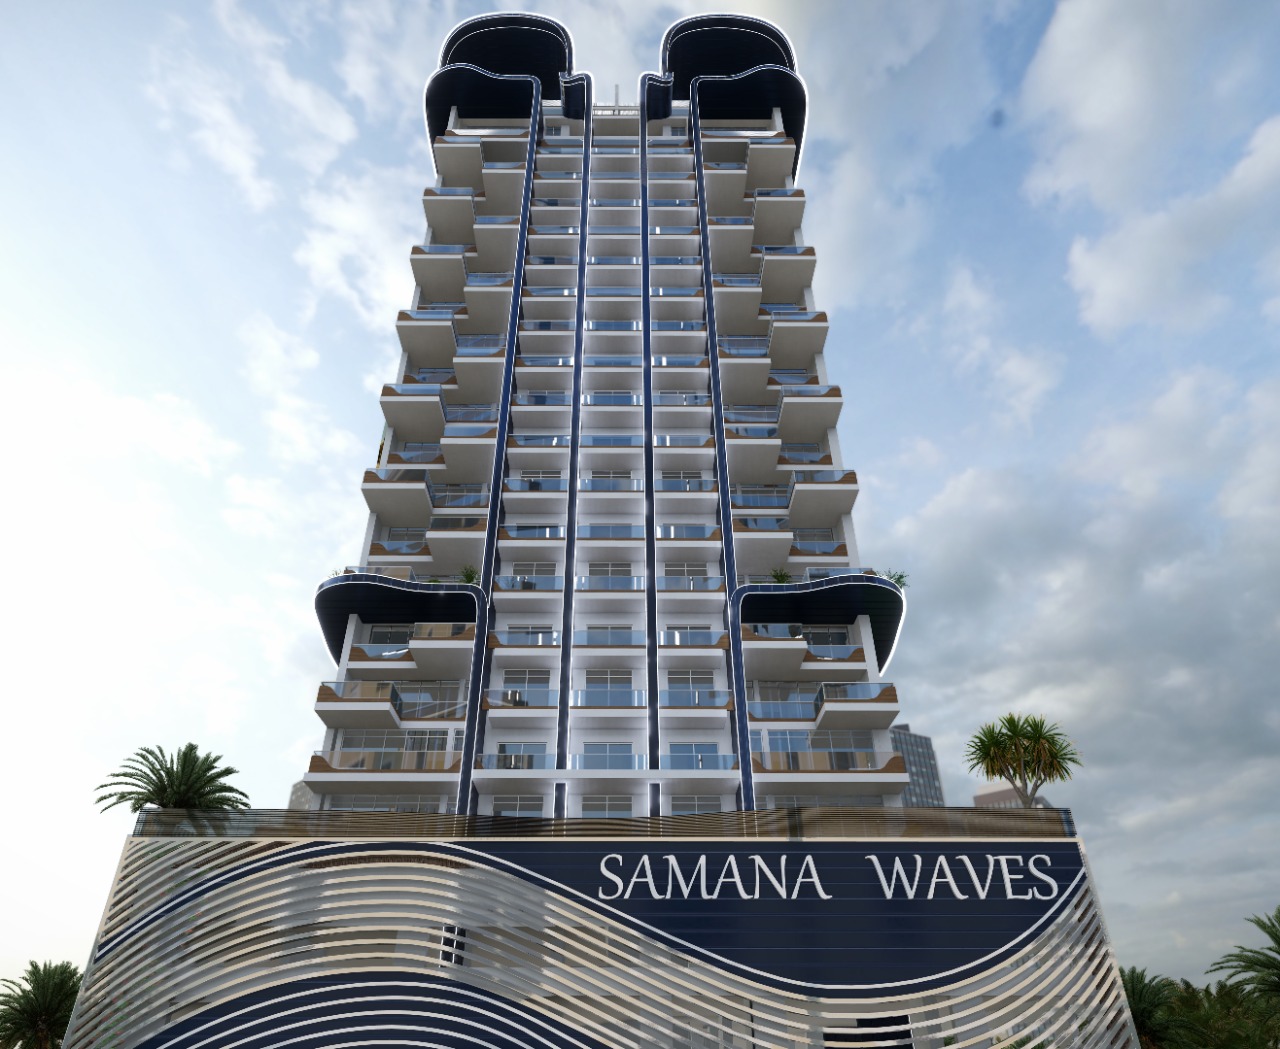 Gallery Samana Waves Apartments